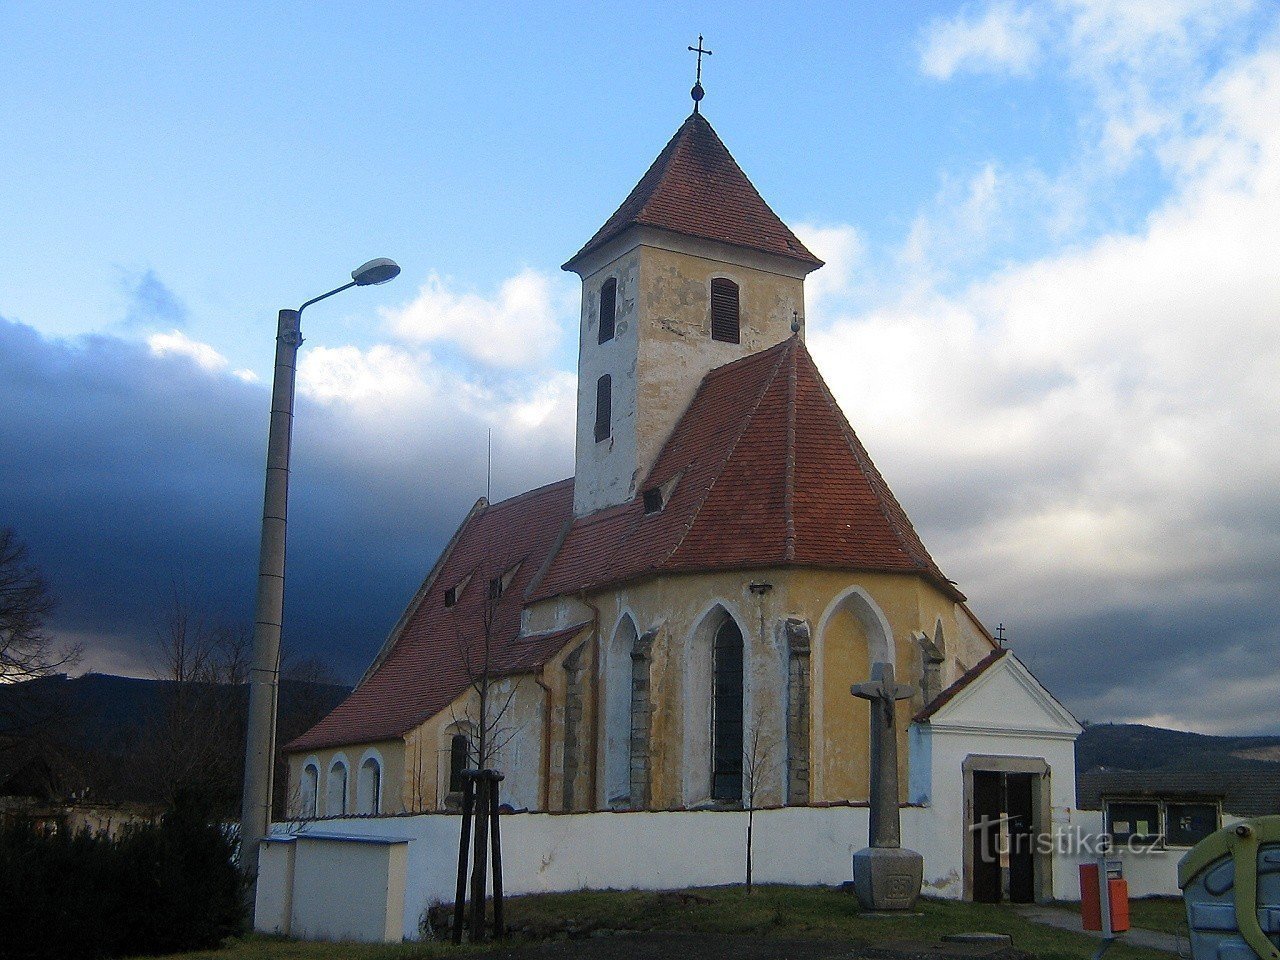 Igreja de St. Maria Madalena do sudeste